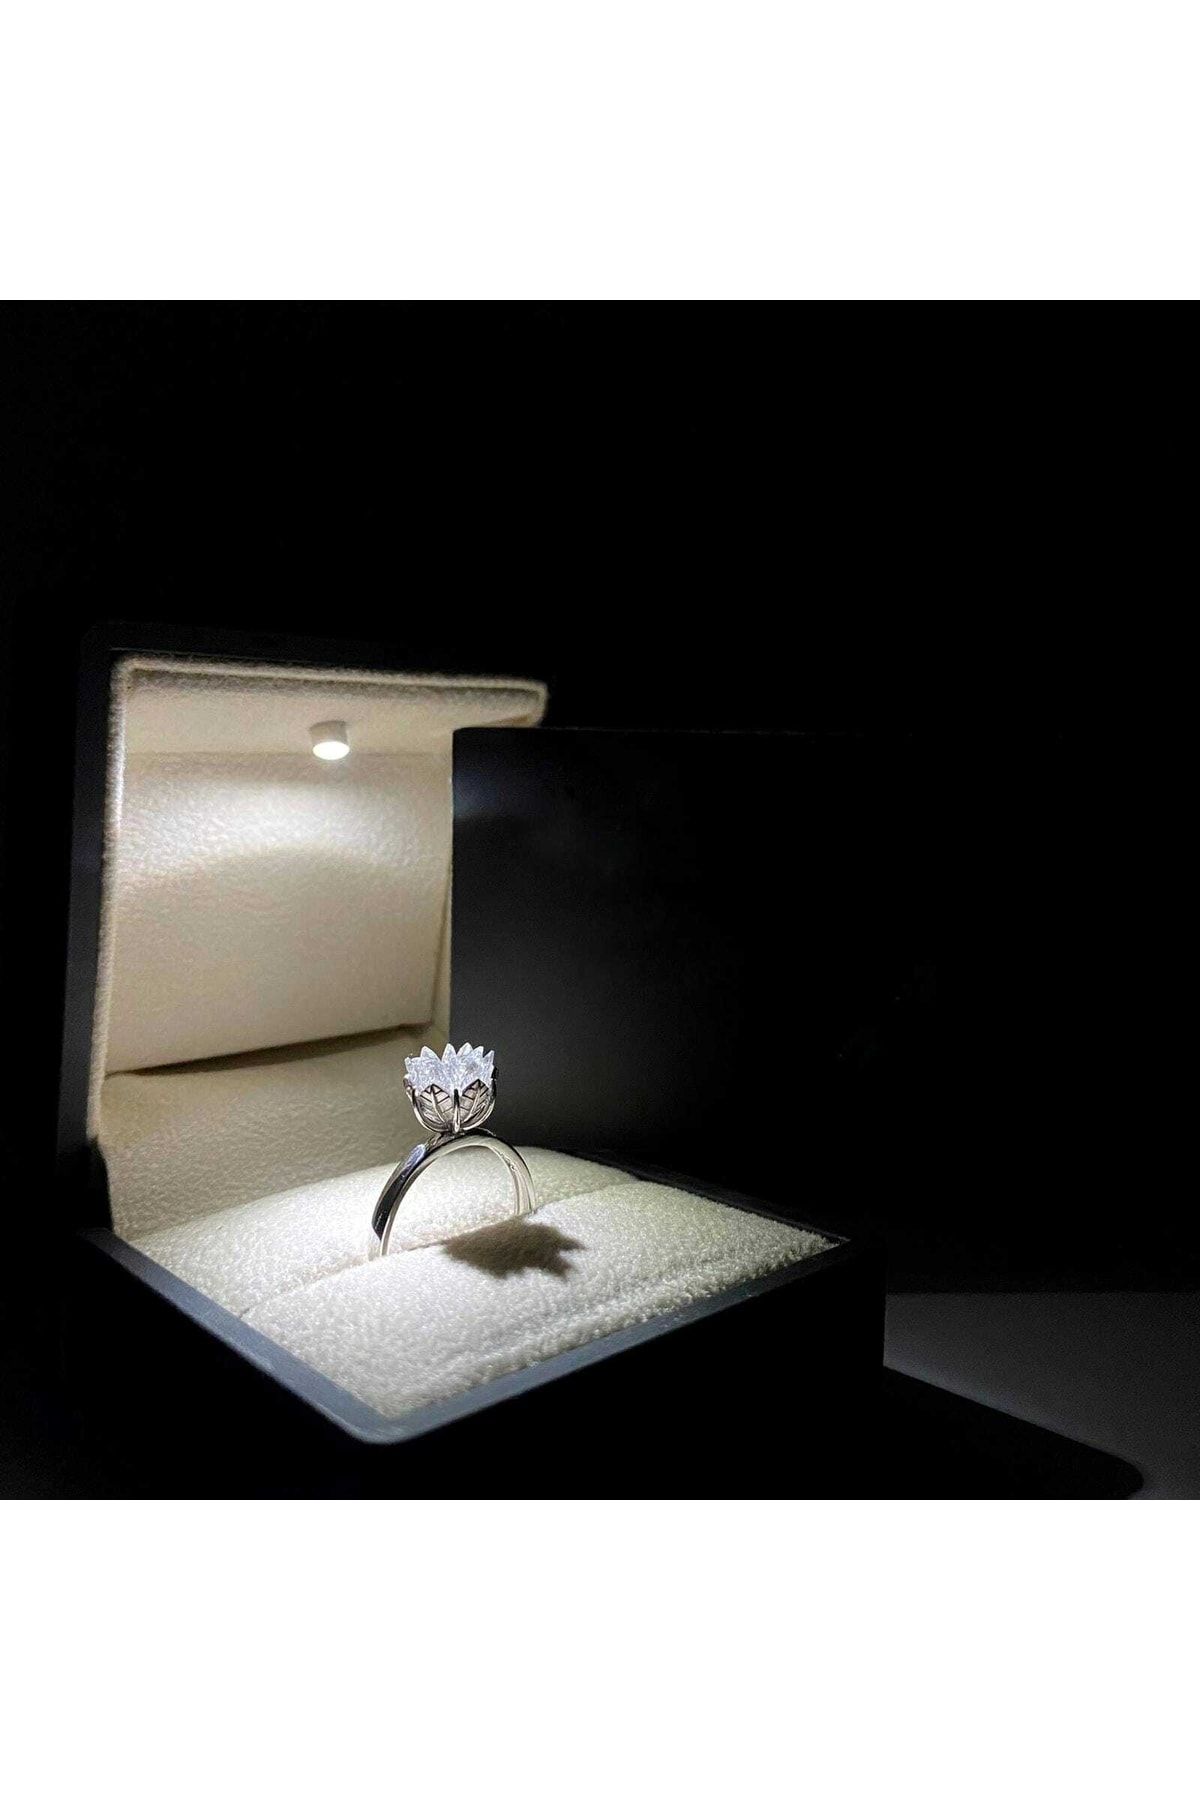 LOTUS JW Lotus Çiçeği Yüzük & Işıklı Yüzük Kutusu - 925 Ayar Gümüş Yüzük